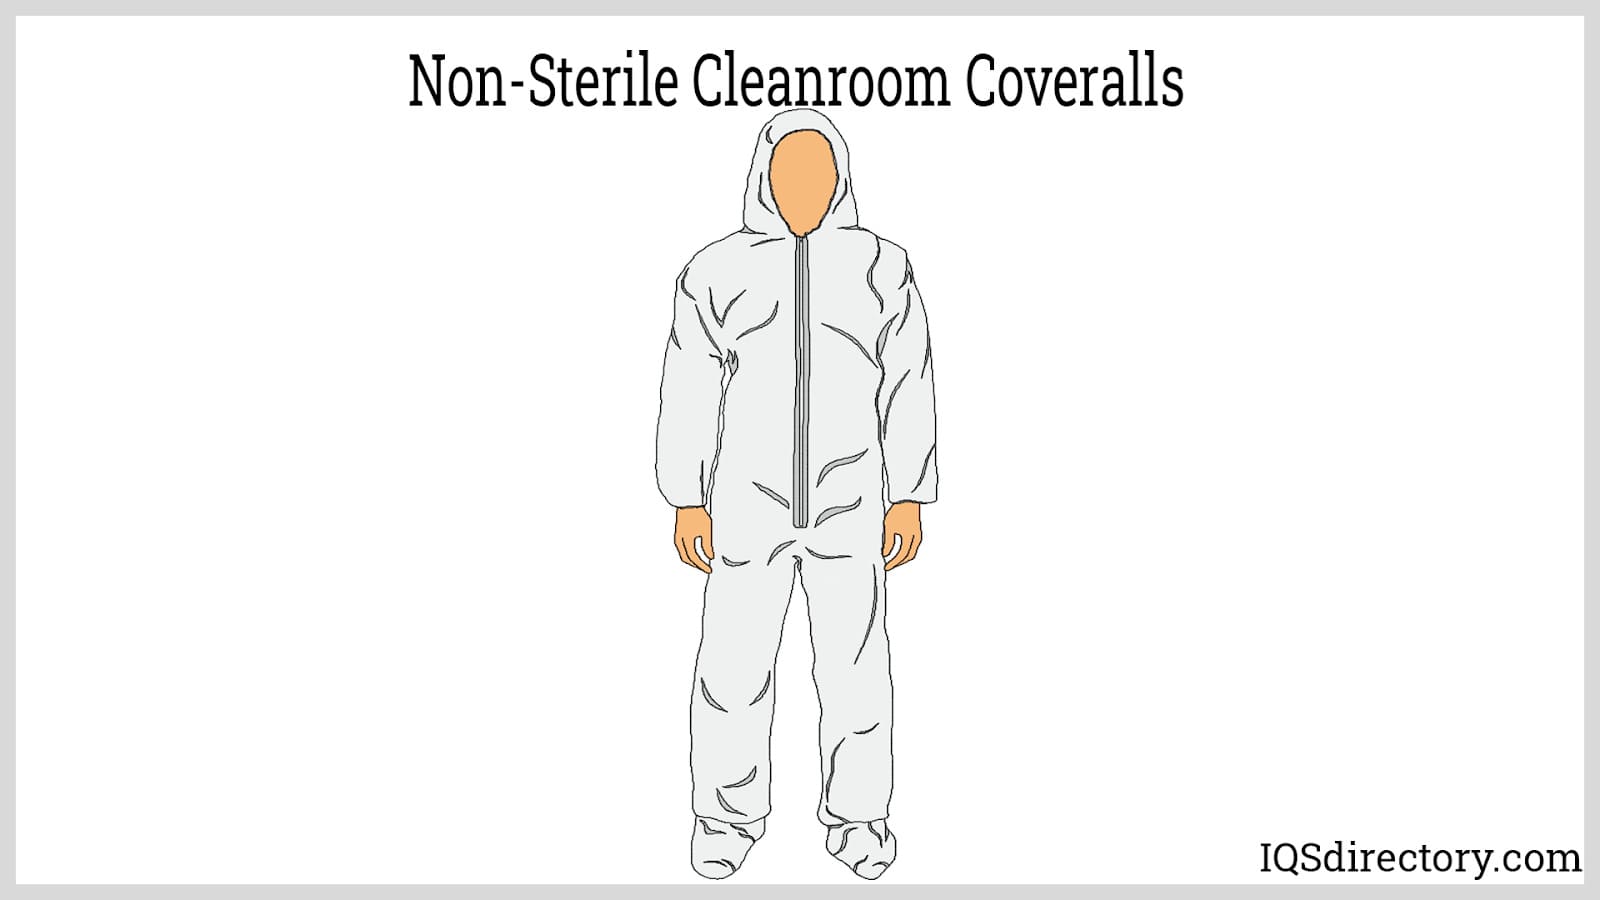 Non-Sterile Cleanroom Coveralls